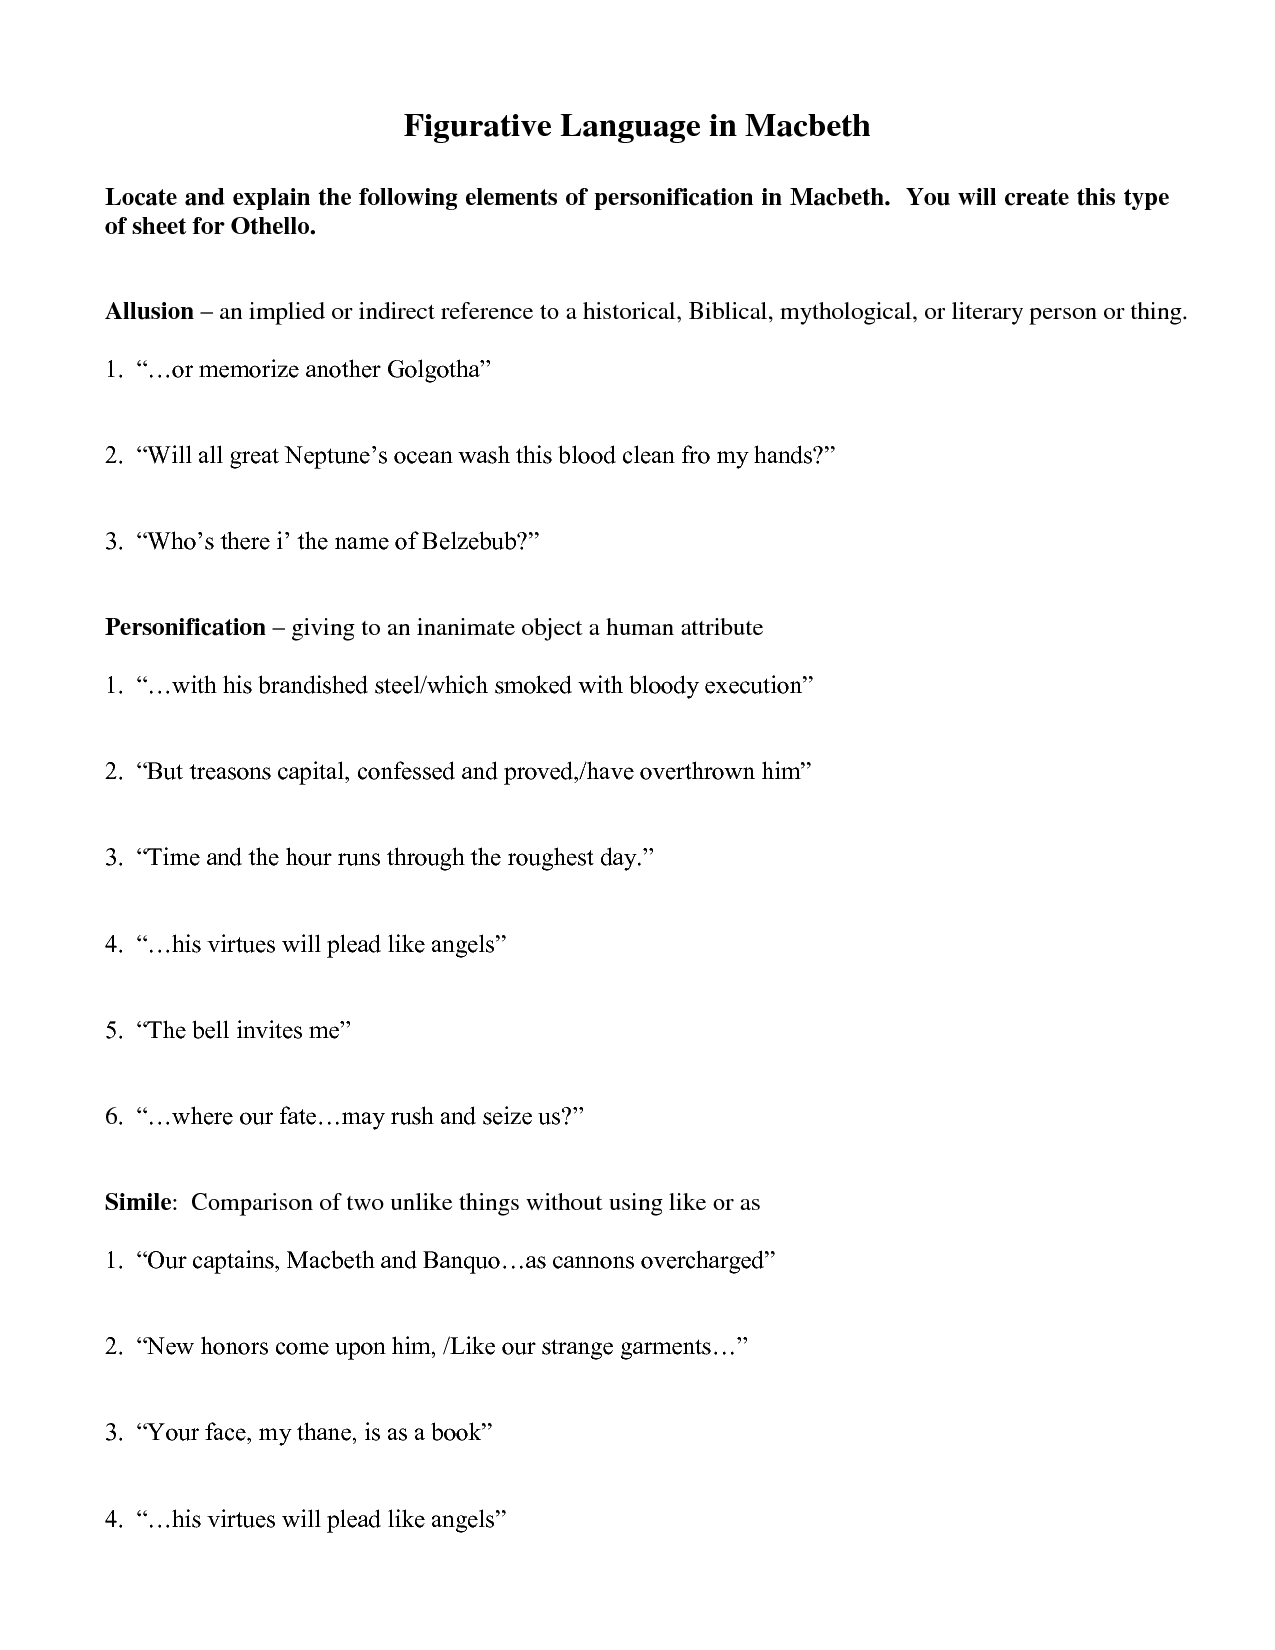 Macbeth Act 3 Figurative Language Worksheet Image